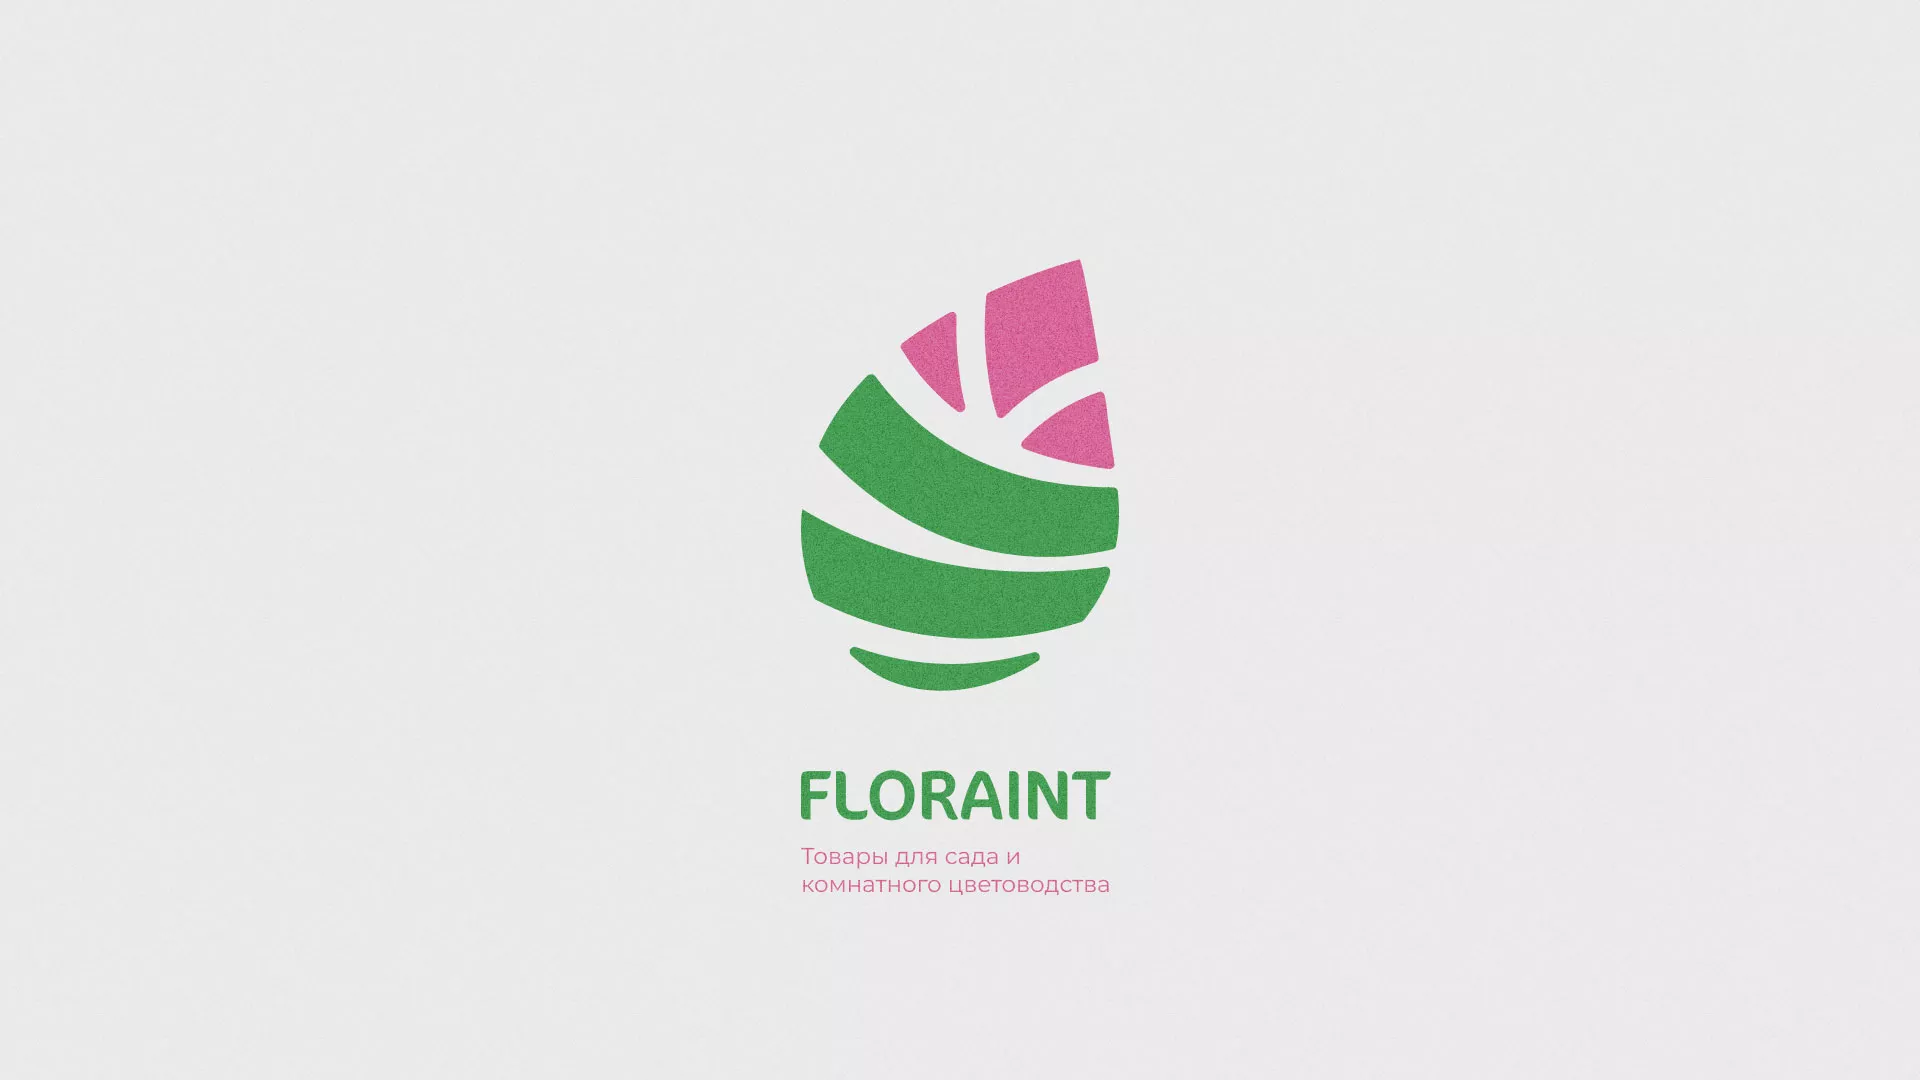 Разработка оформления профиля Instagram для магазина «Floraint» в Стародубе